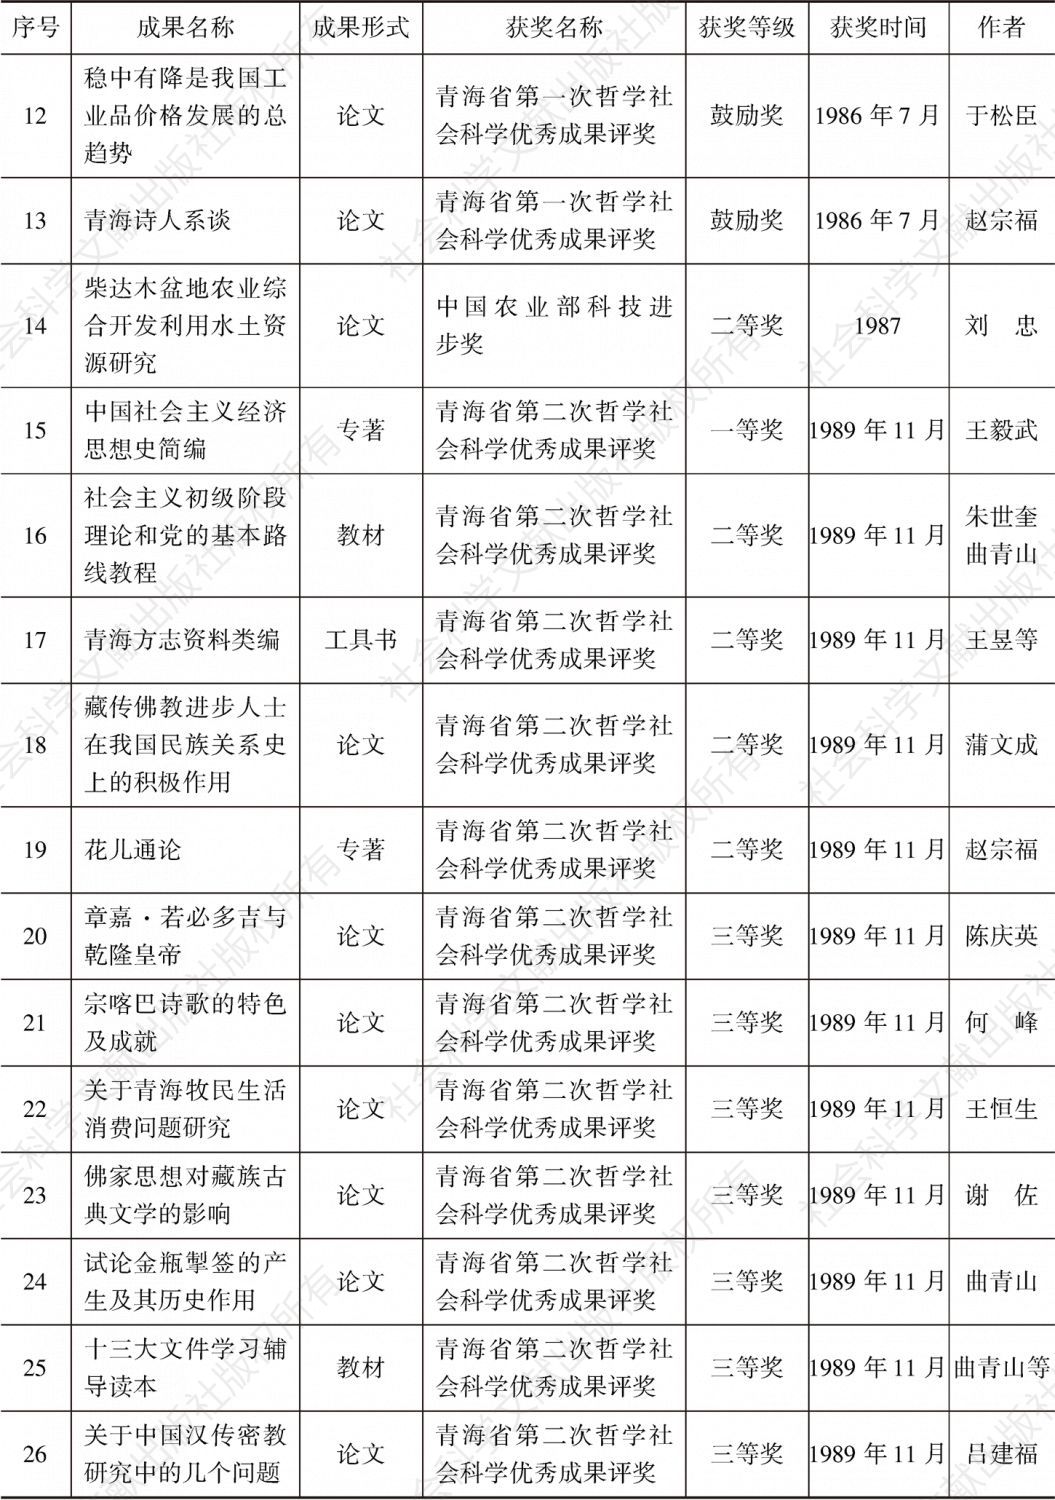 青海省社会科学院历年获奖科研成果目录-续表1